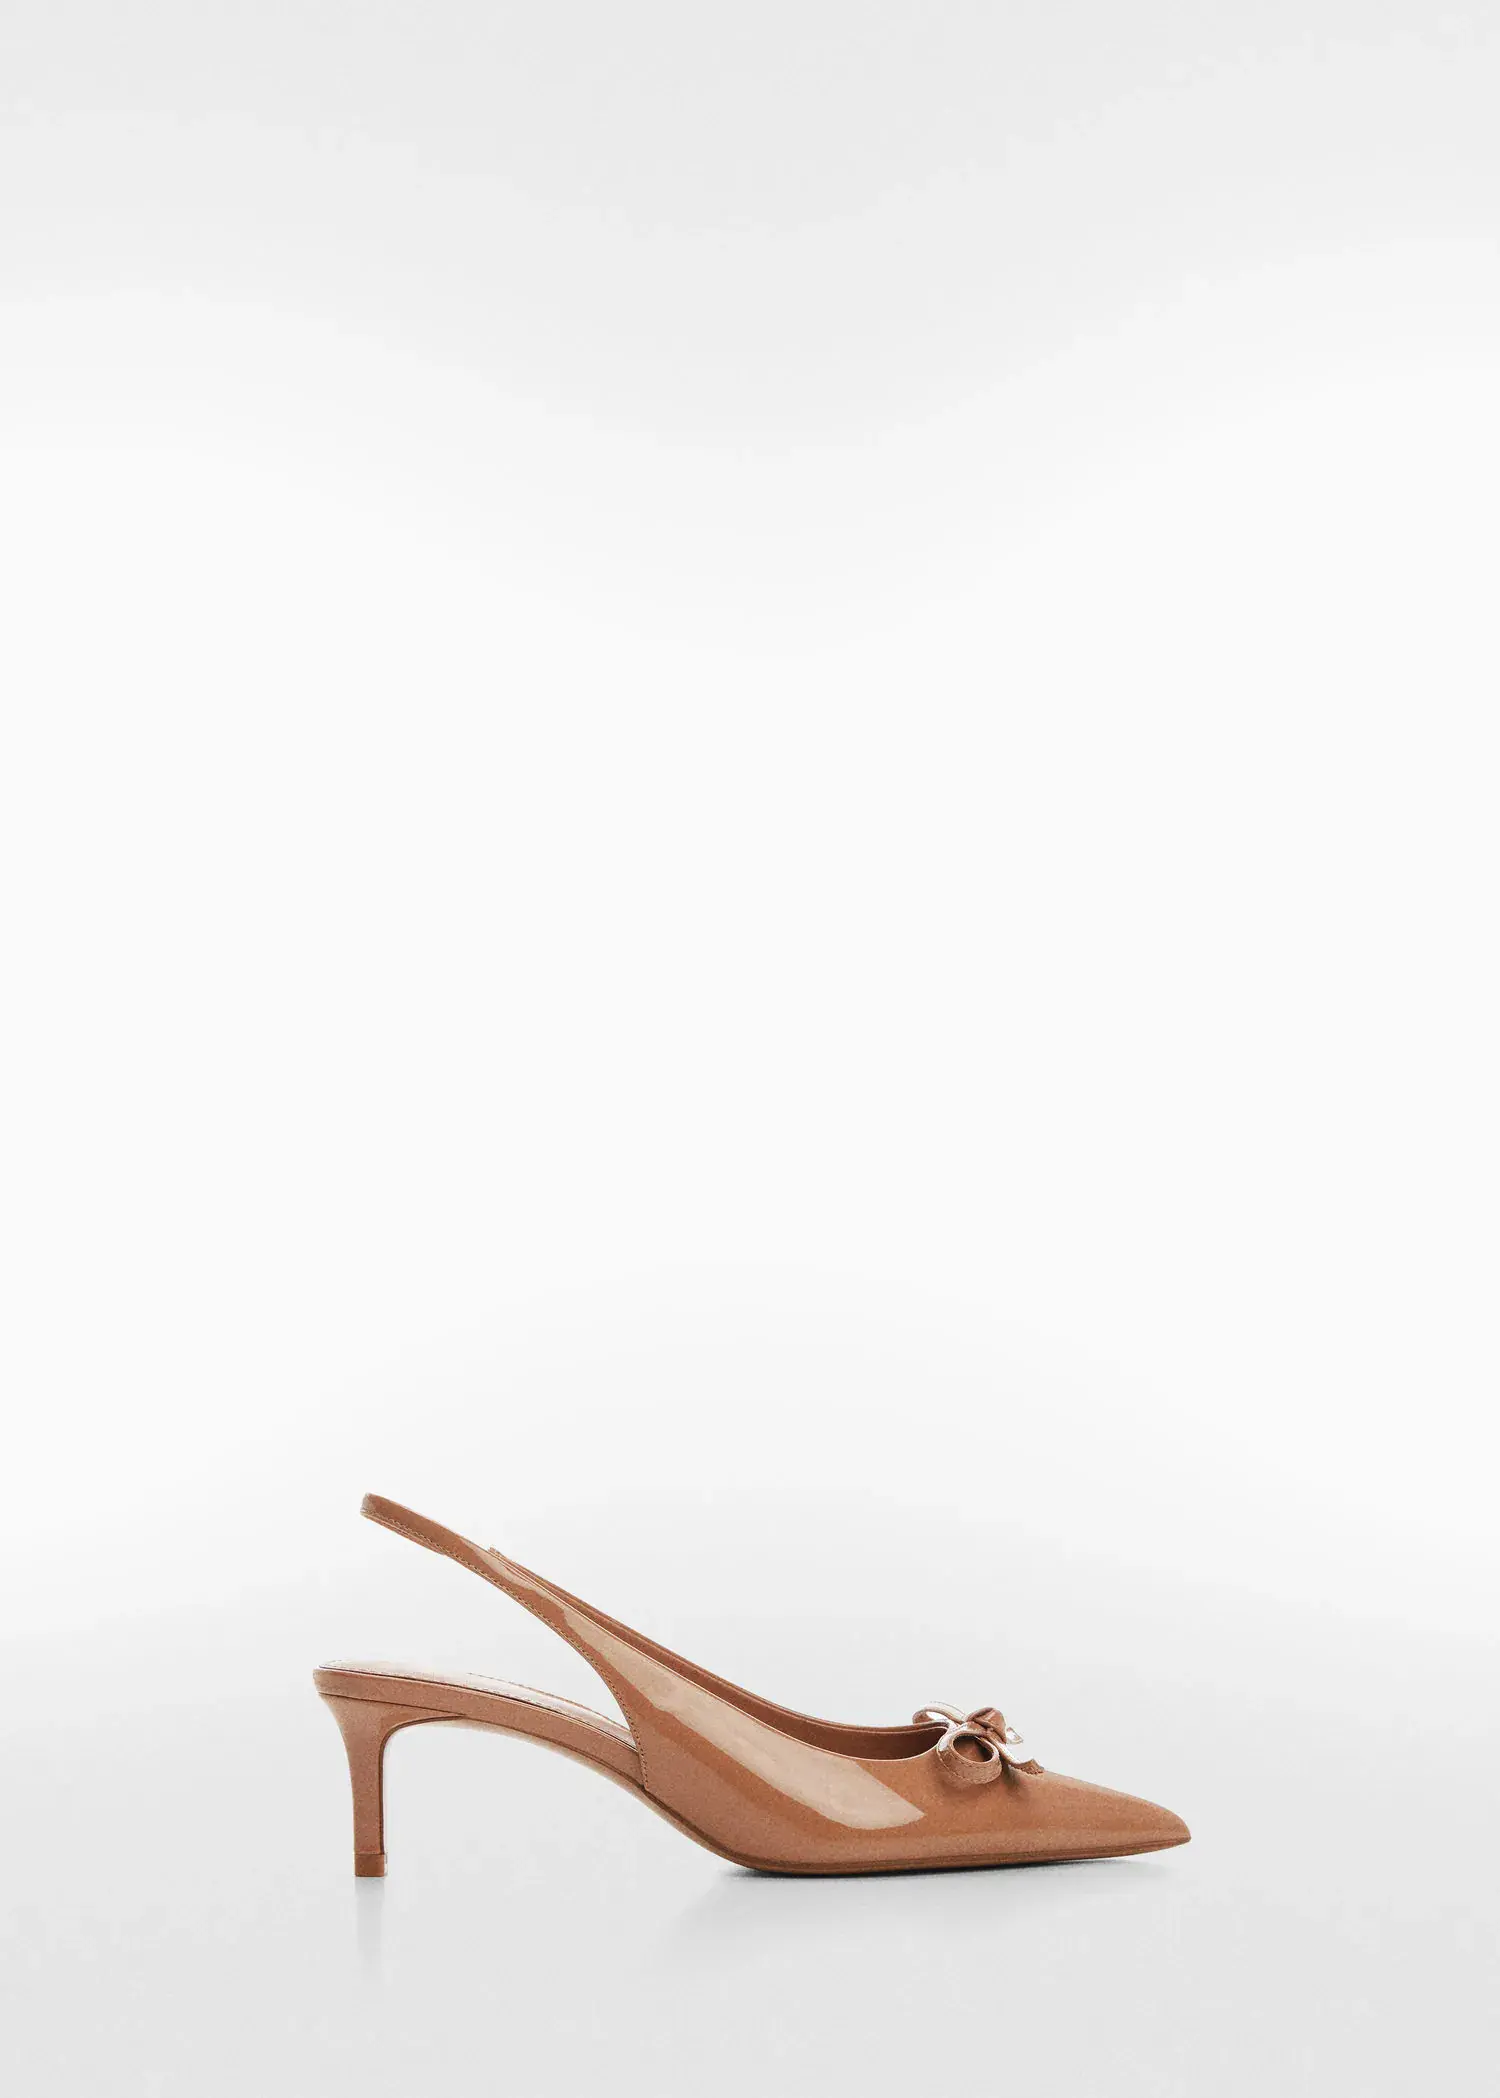 Mango Patent leather slingback-heeled shoes. 2